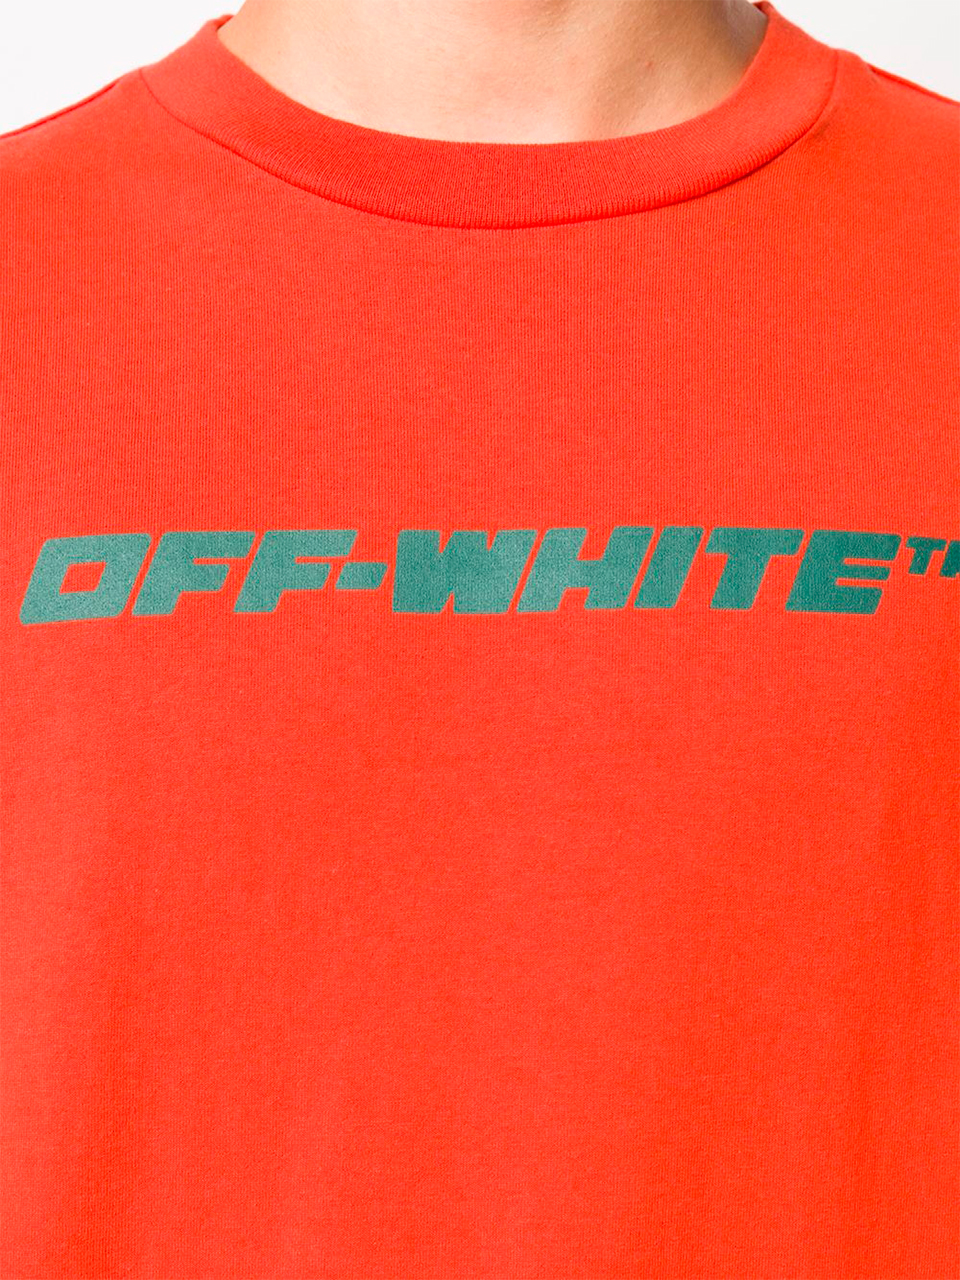 Imagem de: Camiseta Off-White Worker Laranja